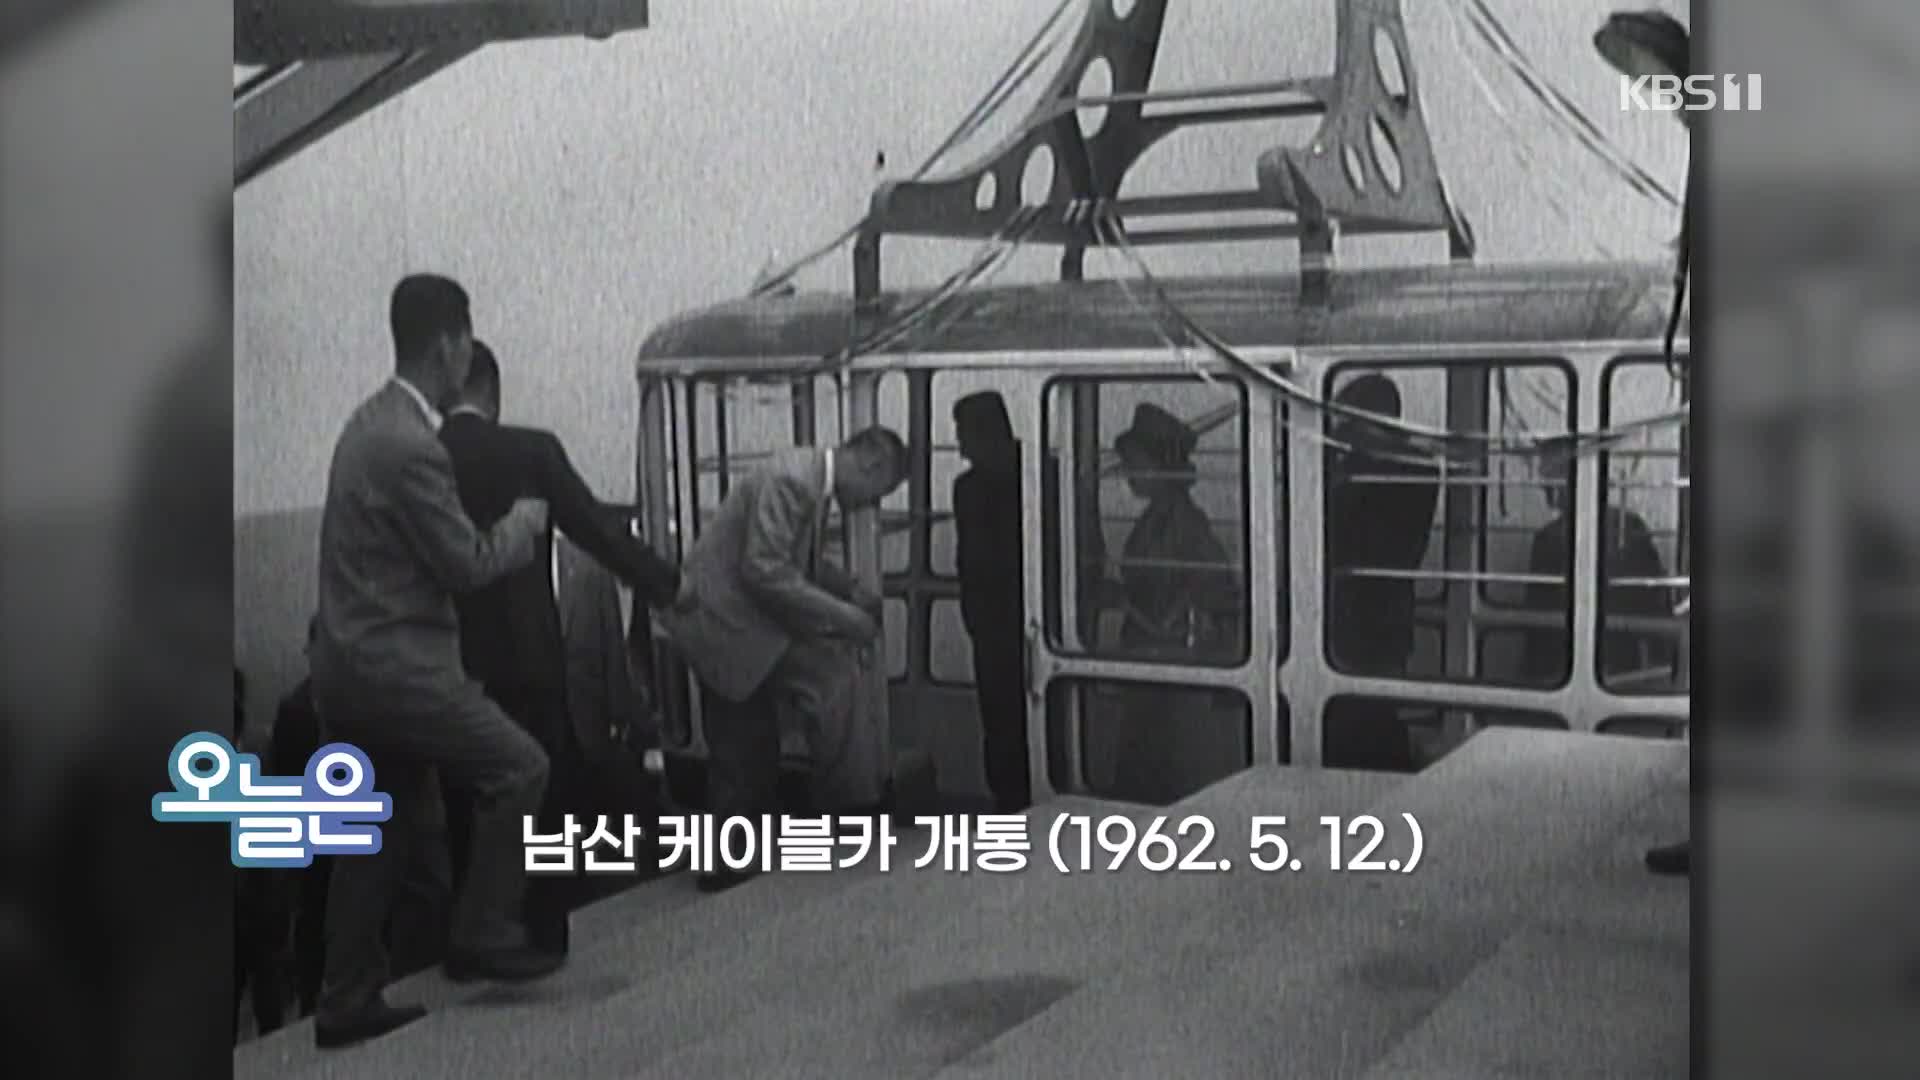 [오늘은] 남산 케이블카 개통 (1962.5.12.)